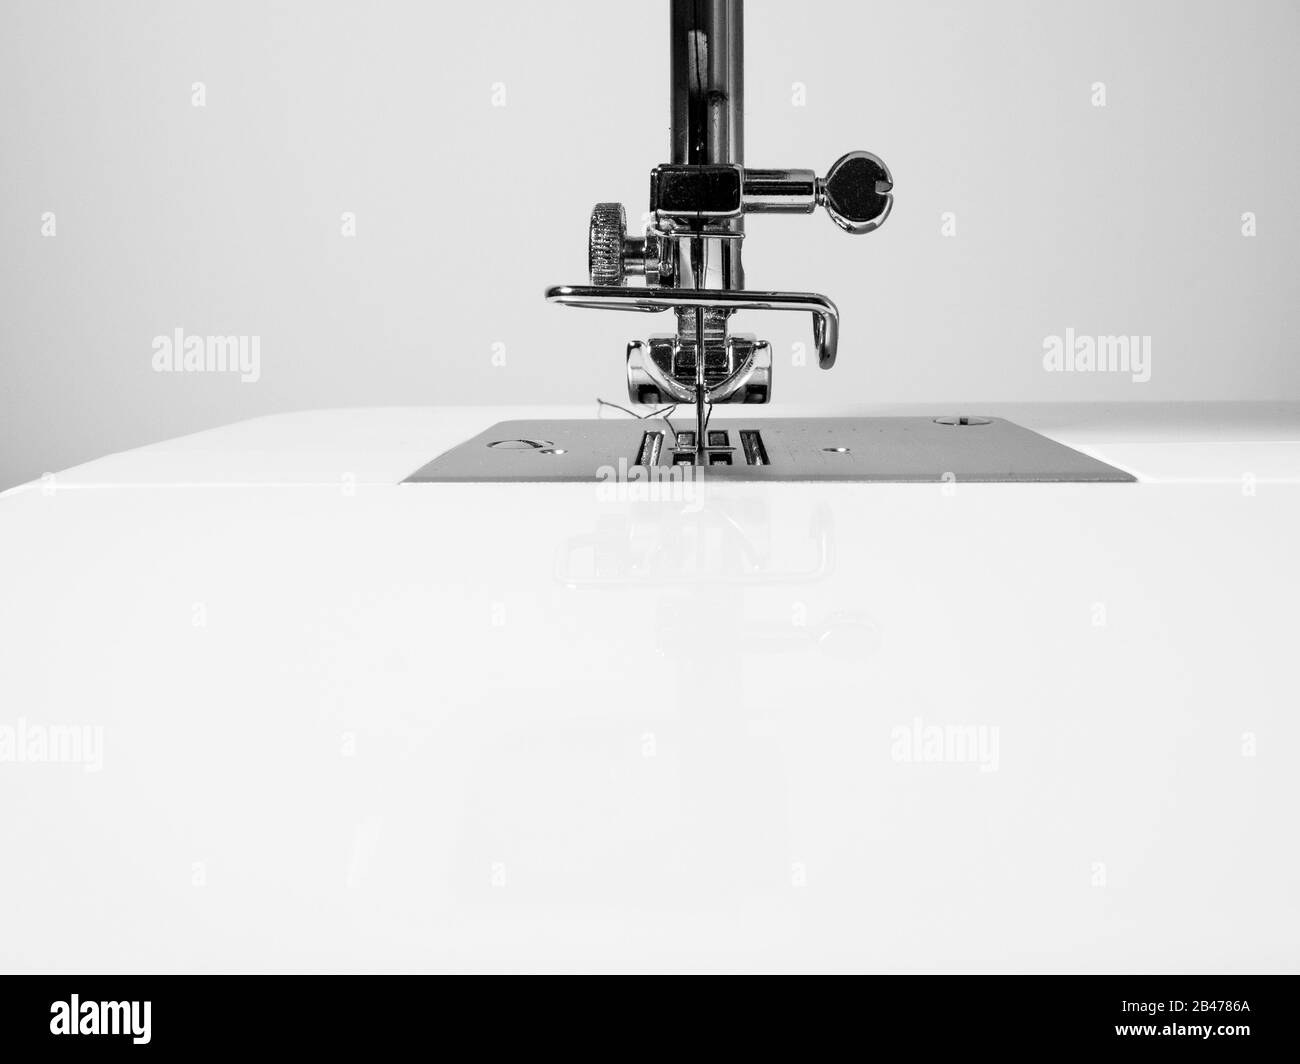 Détail machine à coudre sur un fond de mur blanc. Espace de copie, noir et blanc. Concept d'artisanat. Banque D'Images